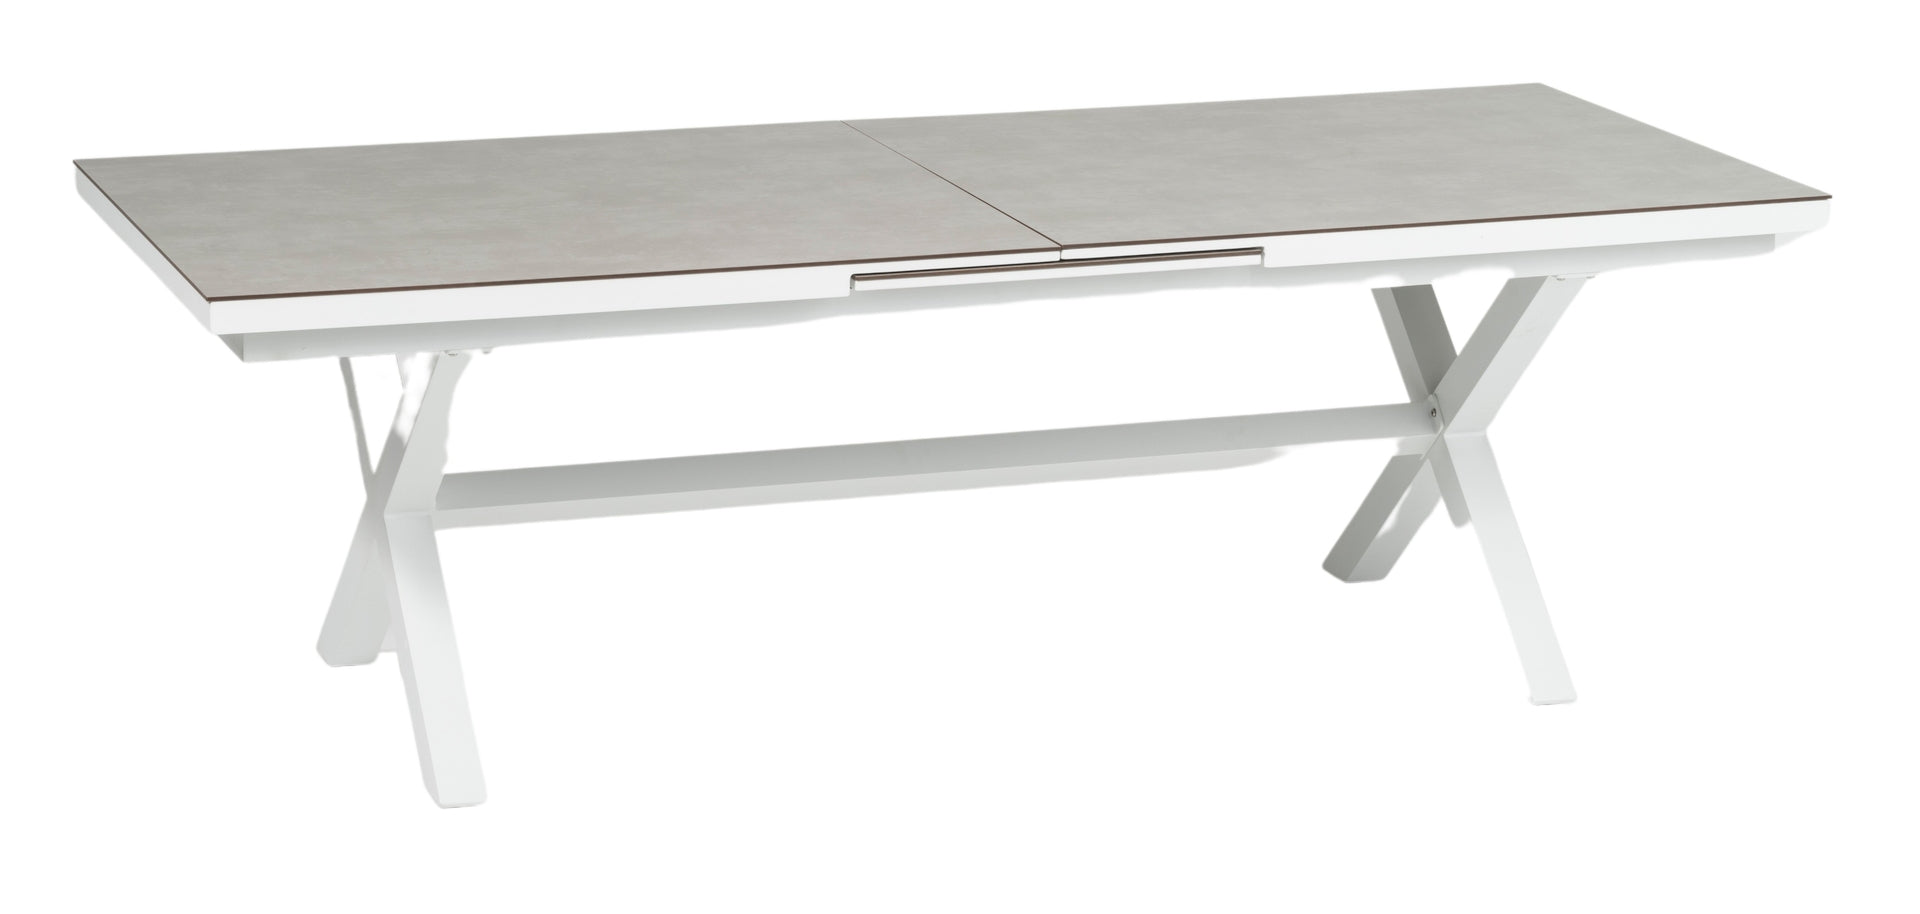 Stilvoller 'Lexy' Gartentisch in weißem Steindekor mit HPL-Platte und innovativem Synchronauszug, verfügbar bei Gartenmoebelshop.at